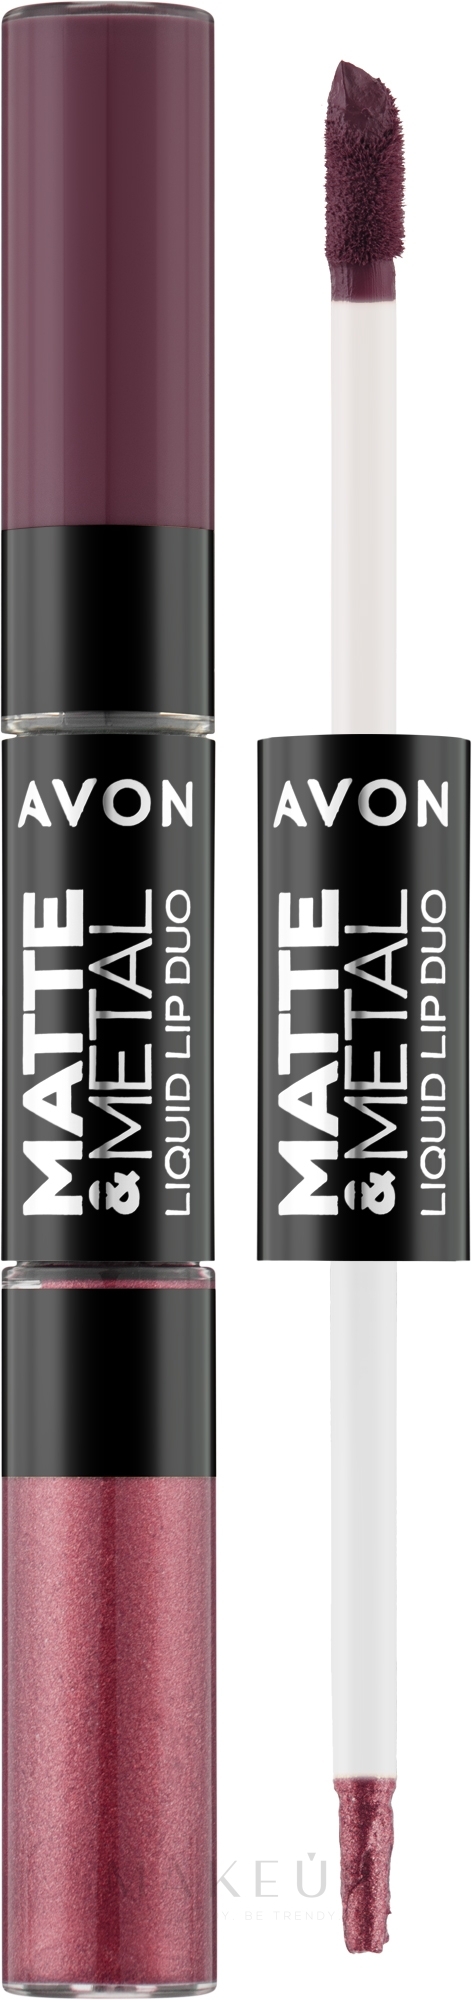 Flüssiger Lippenstift 2in1 - Avon Matte & Metal Liquid Lip Duo — Bild Berry Glaze